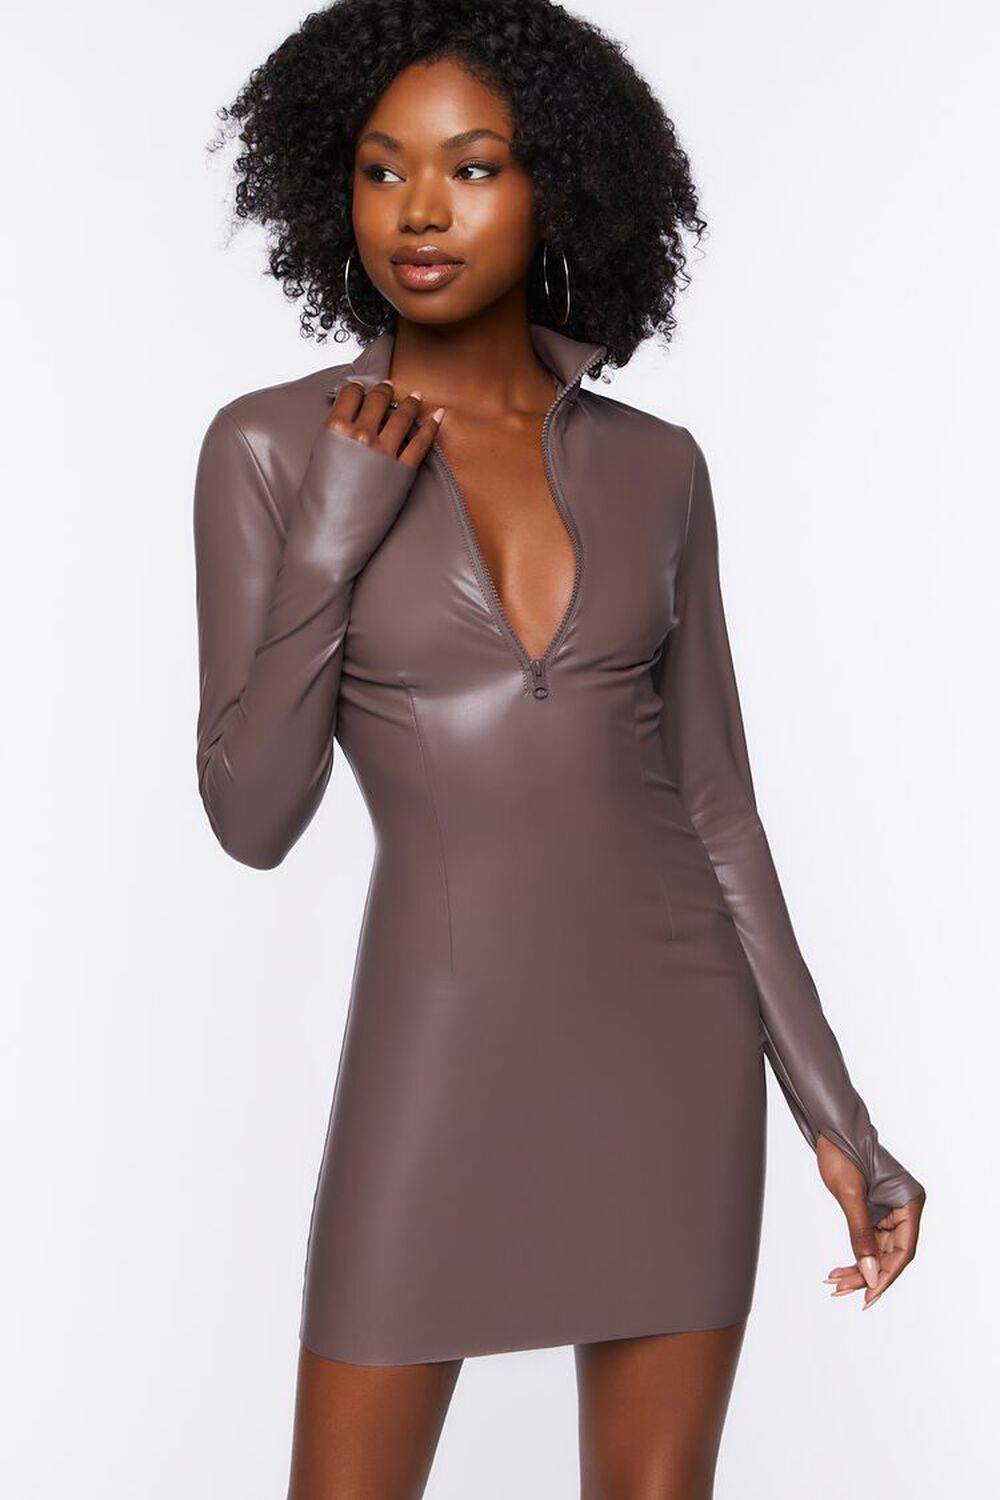 SHIITAKE Faux Leather Half-Zip Mini Dress, image 1